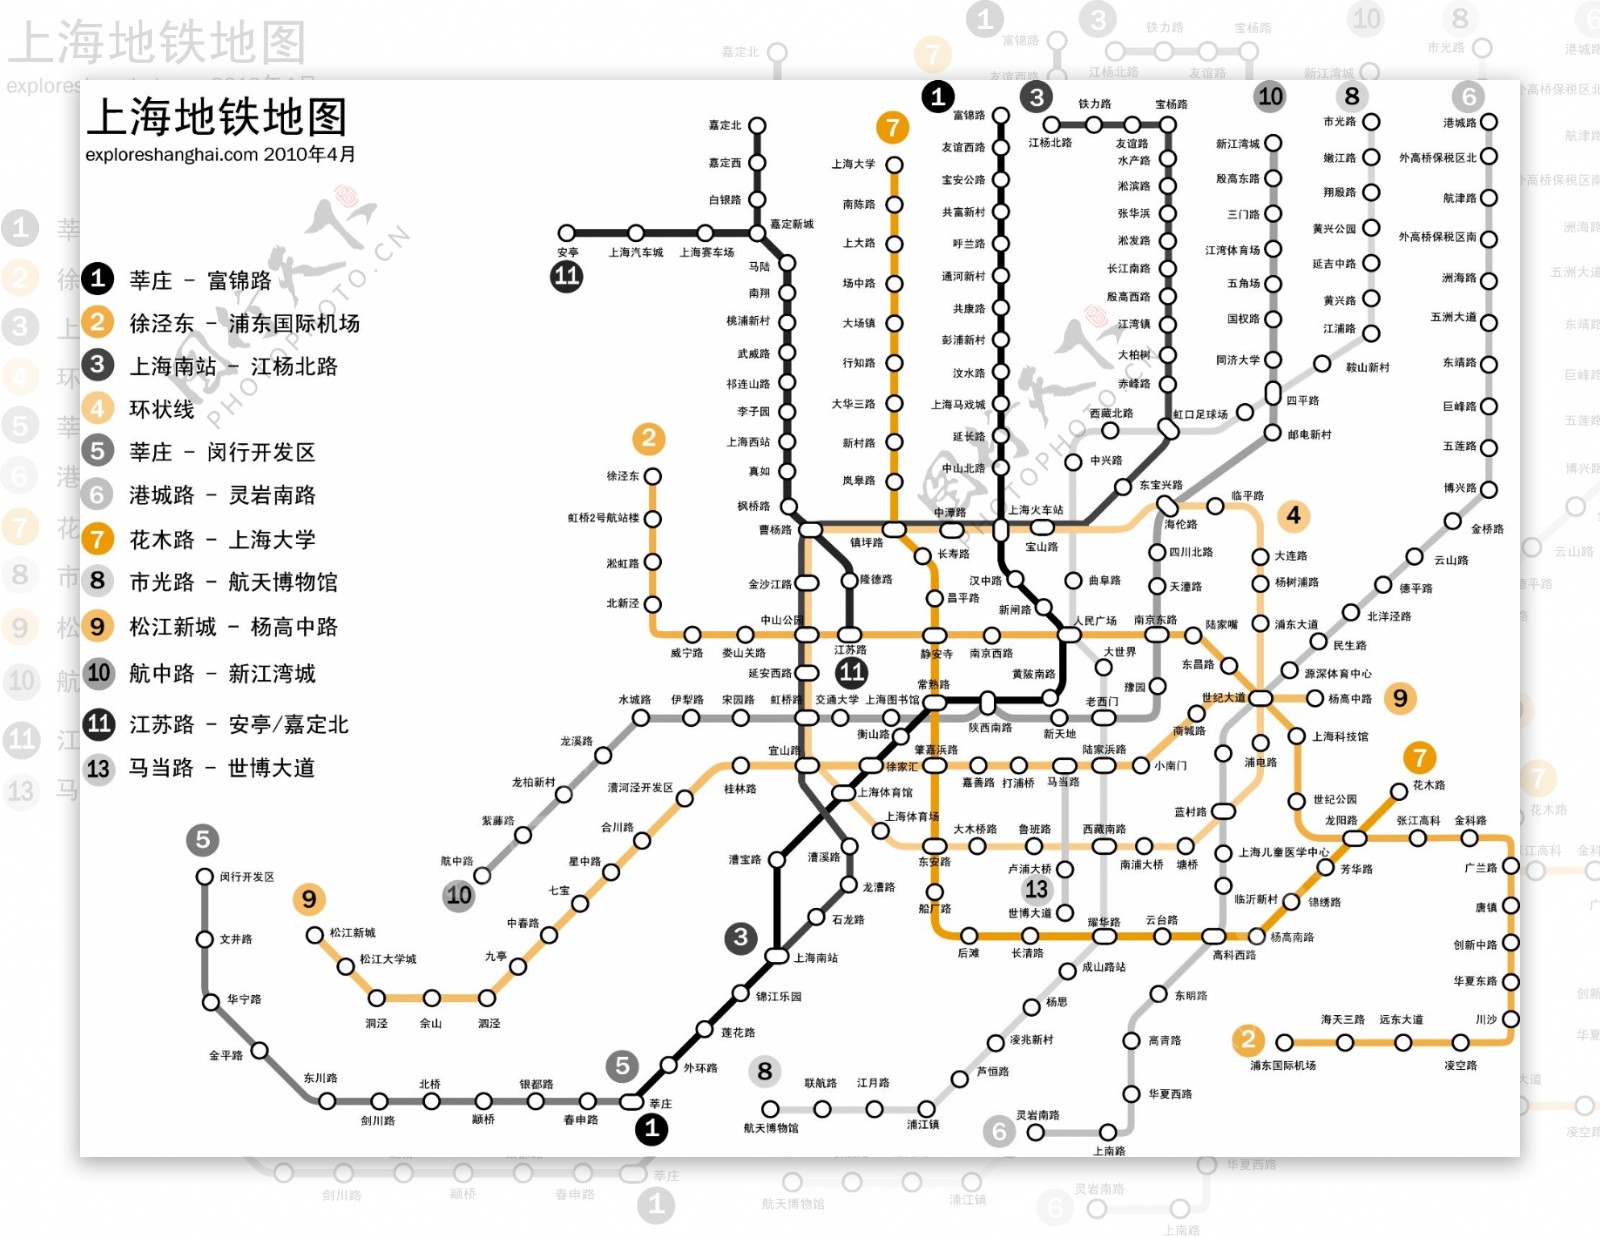 上海地铁双色图片